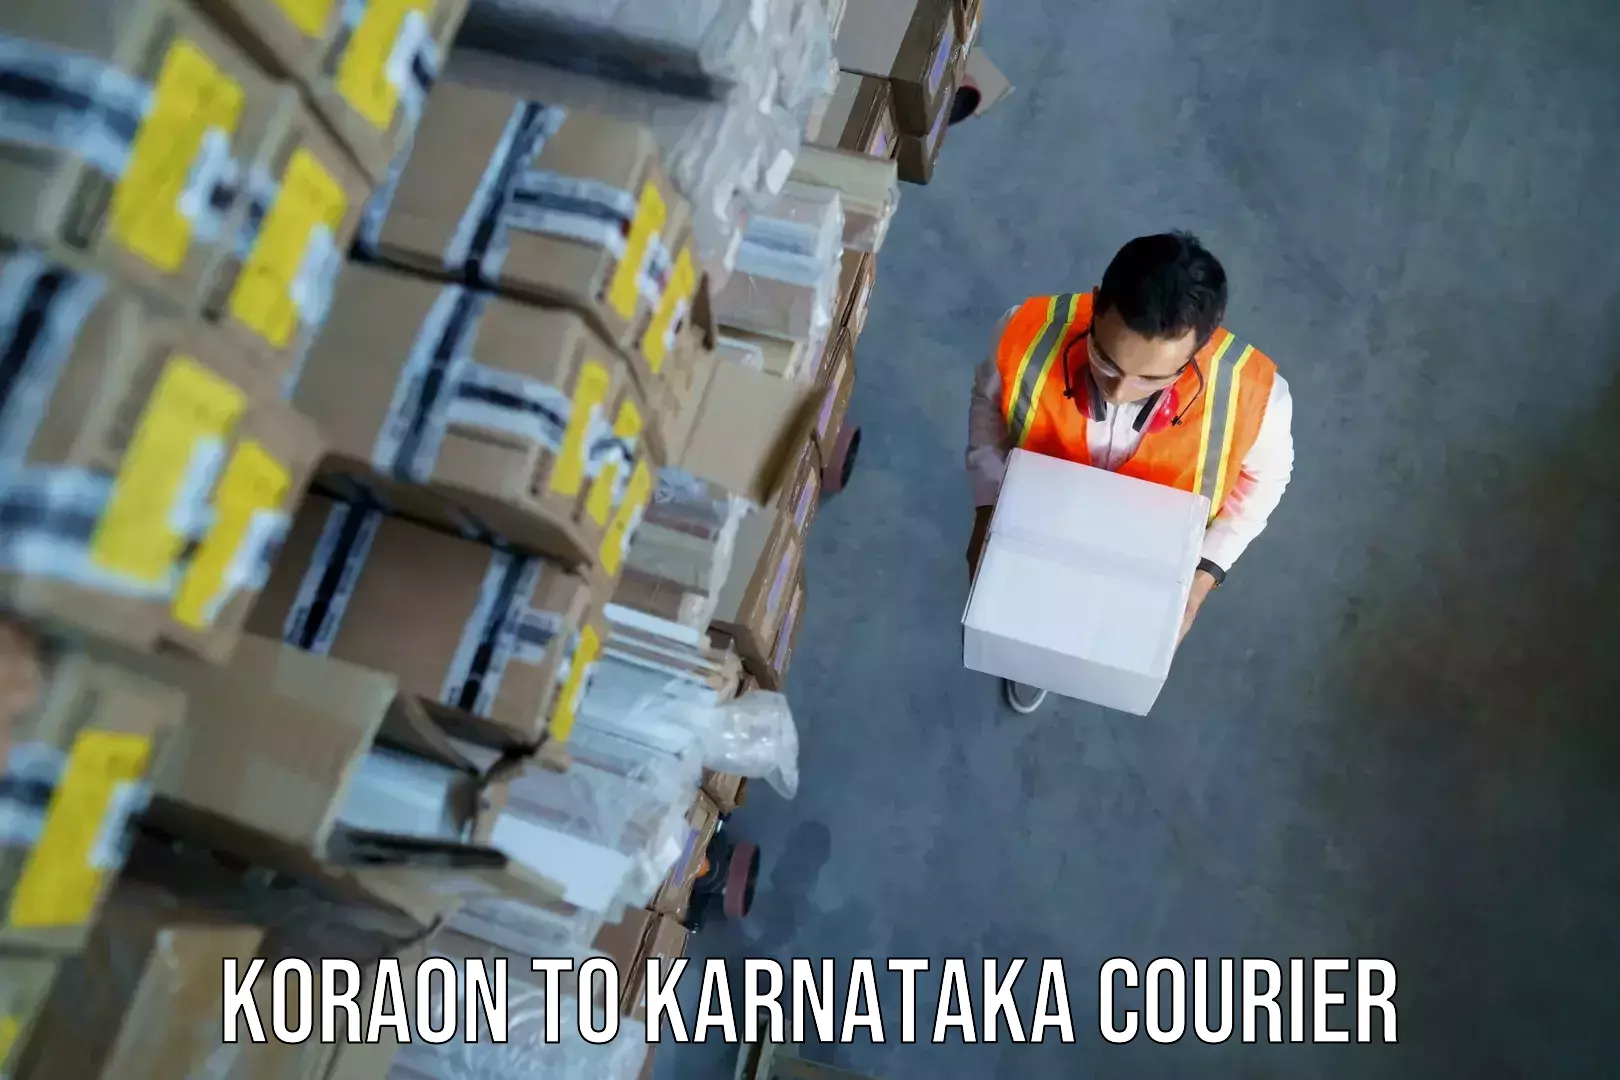 Electronic items luggage shipping Koraon to Karnataka